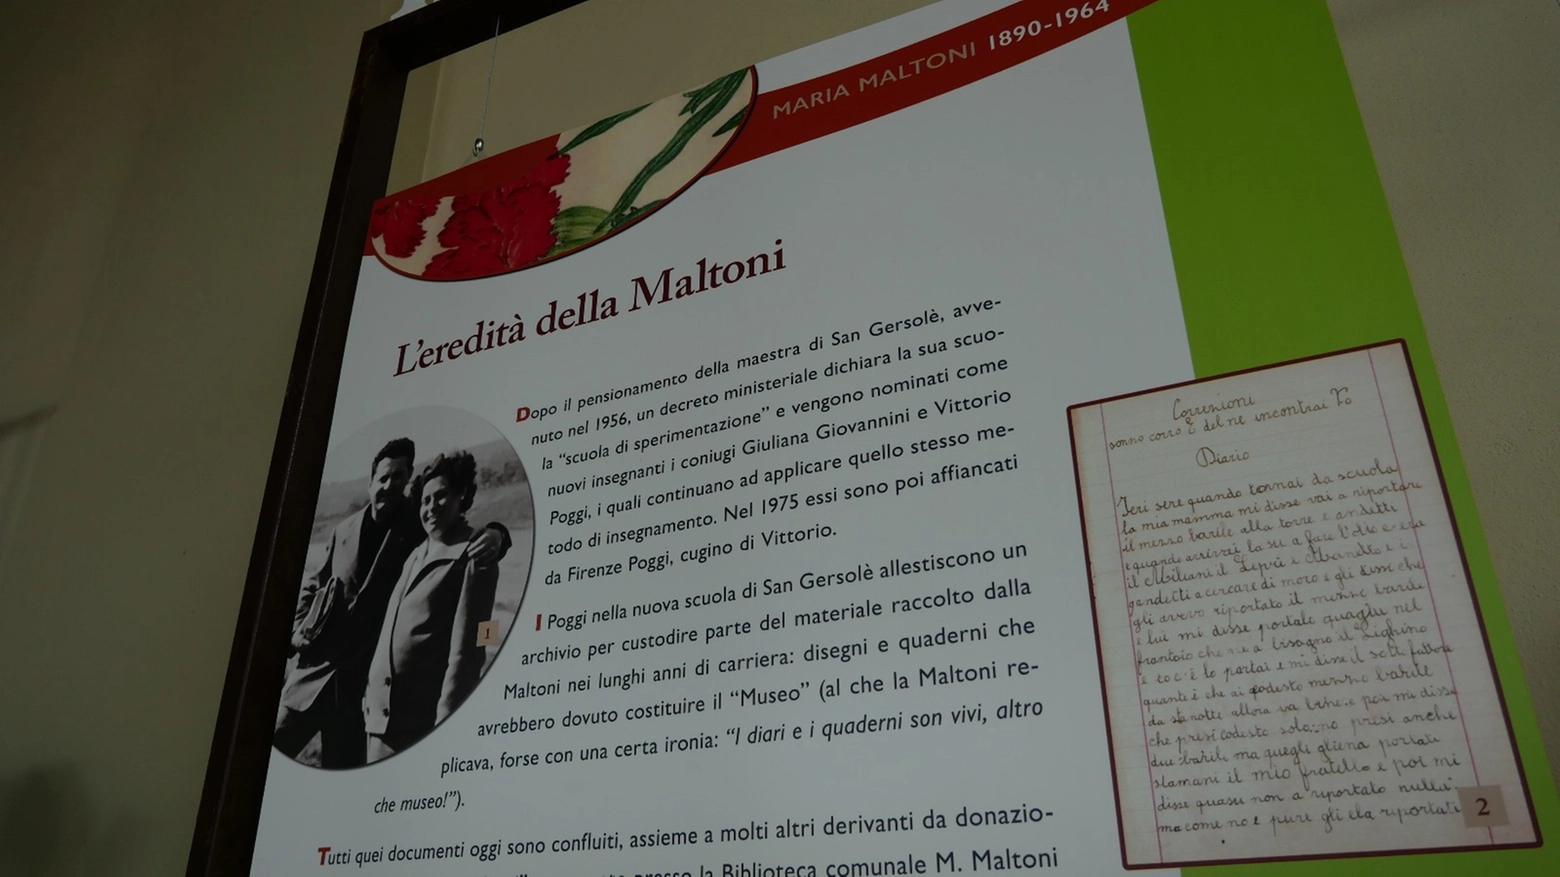 A 60 anni dalla sua morte, Maria Maltoni viene ricordata in una mostra inaugurata oggi nella sua Impruneta. Fotografie, diari, disegni raccontano il suo metodo innovativo che ha influenzato tutta la scuola italiana